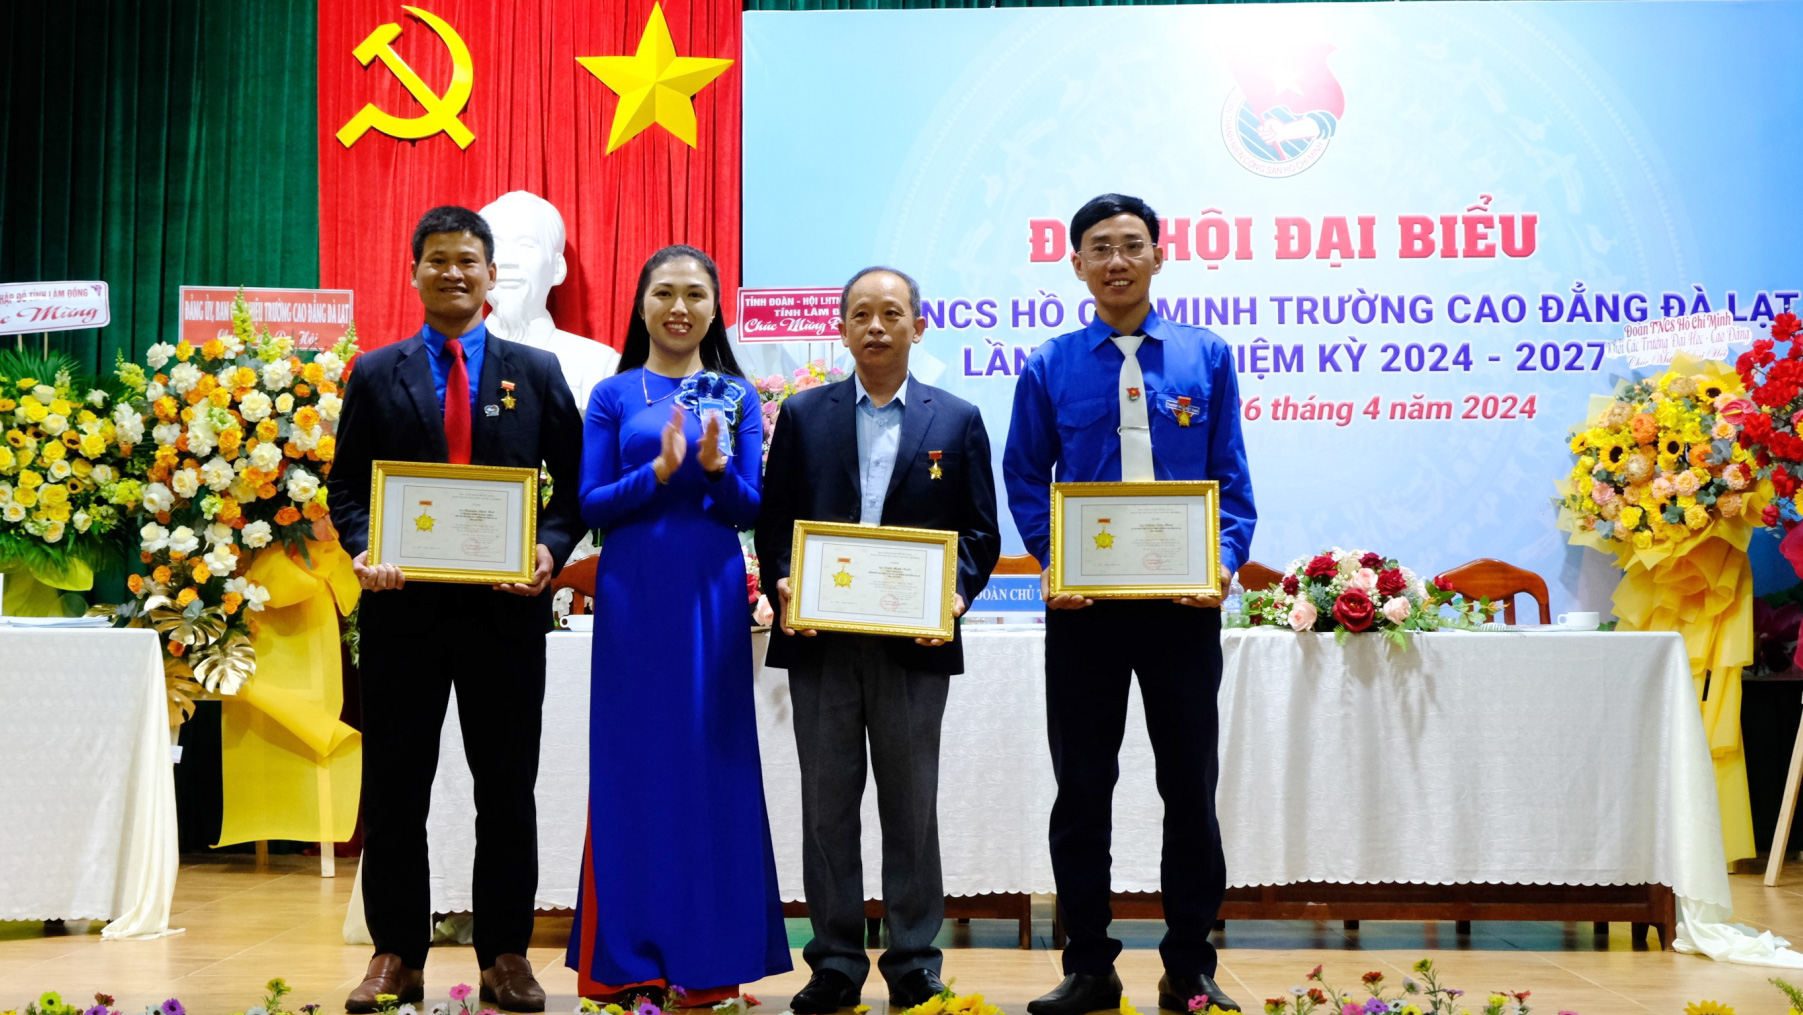 Trao kỷ niệm chương Vì thế hệ trẻ của Trung ương Đoàn TNCS Hồ Chí Minh